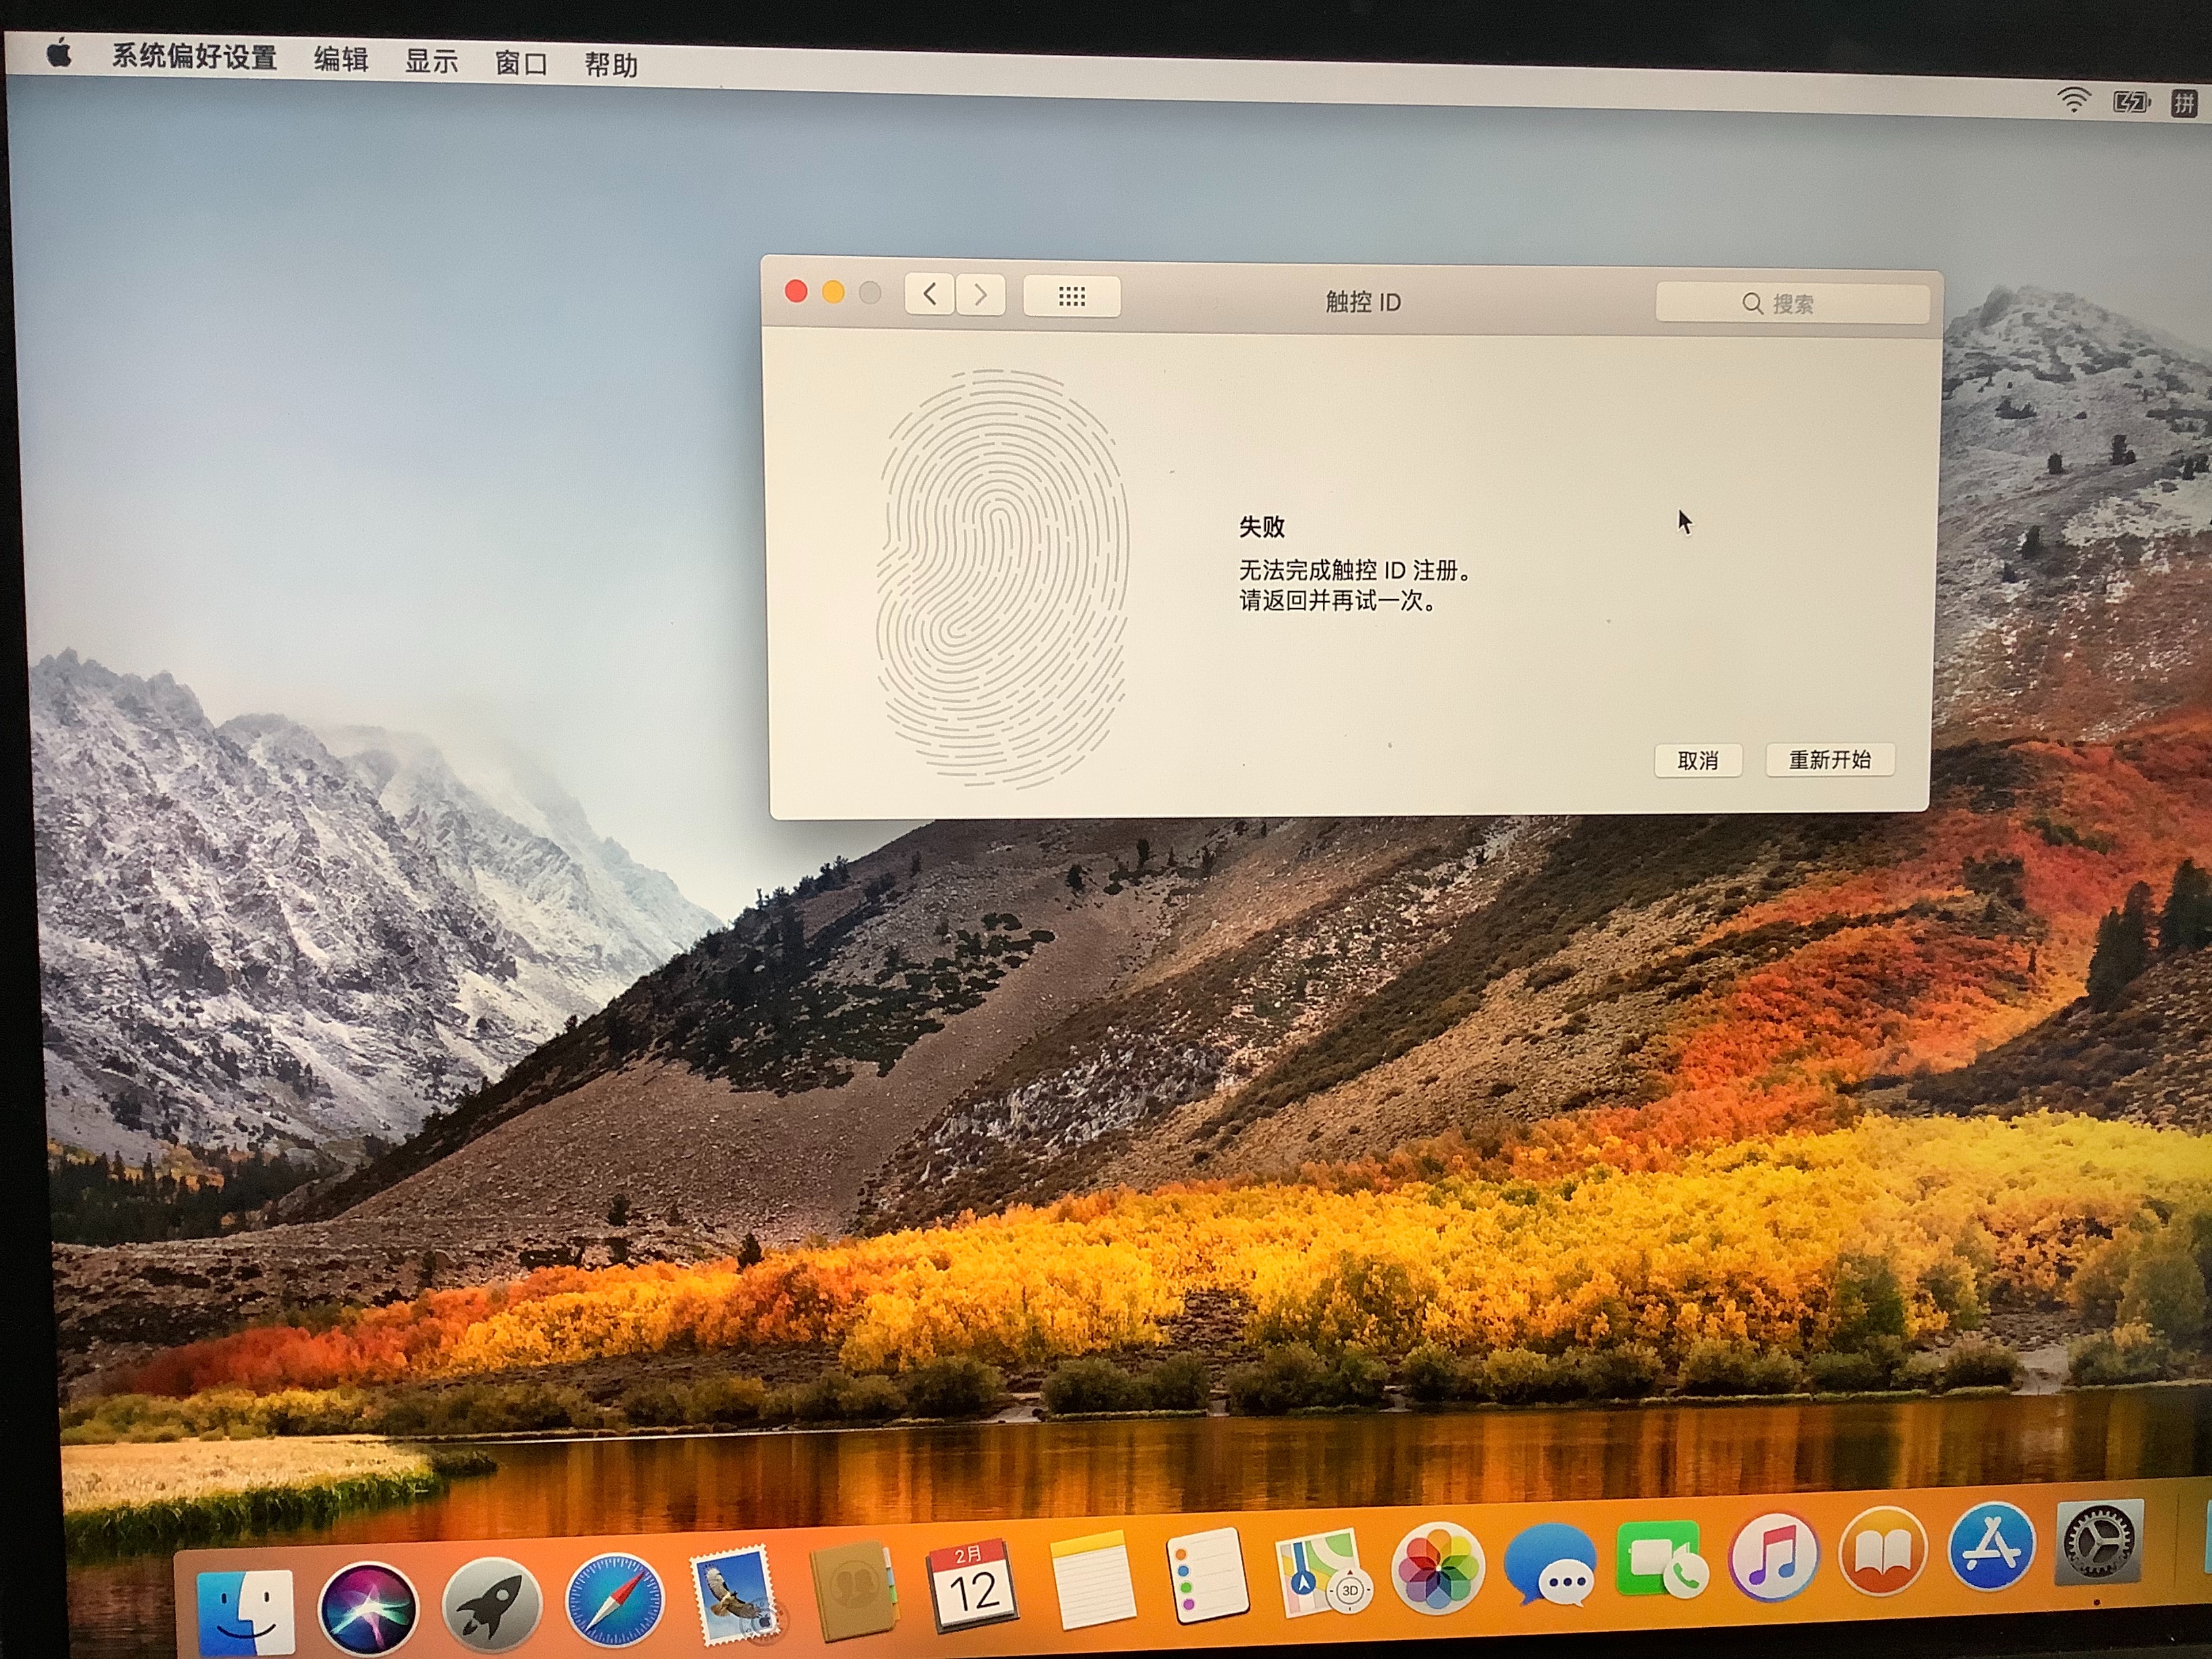 MacBook Pro添加指纹时显示“失败” - Apple 社区